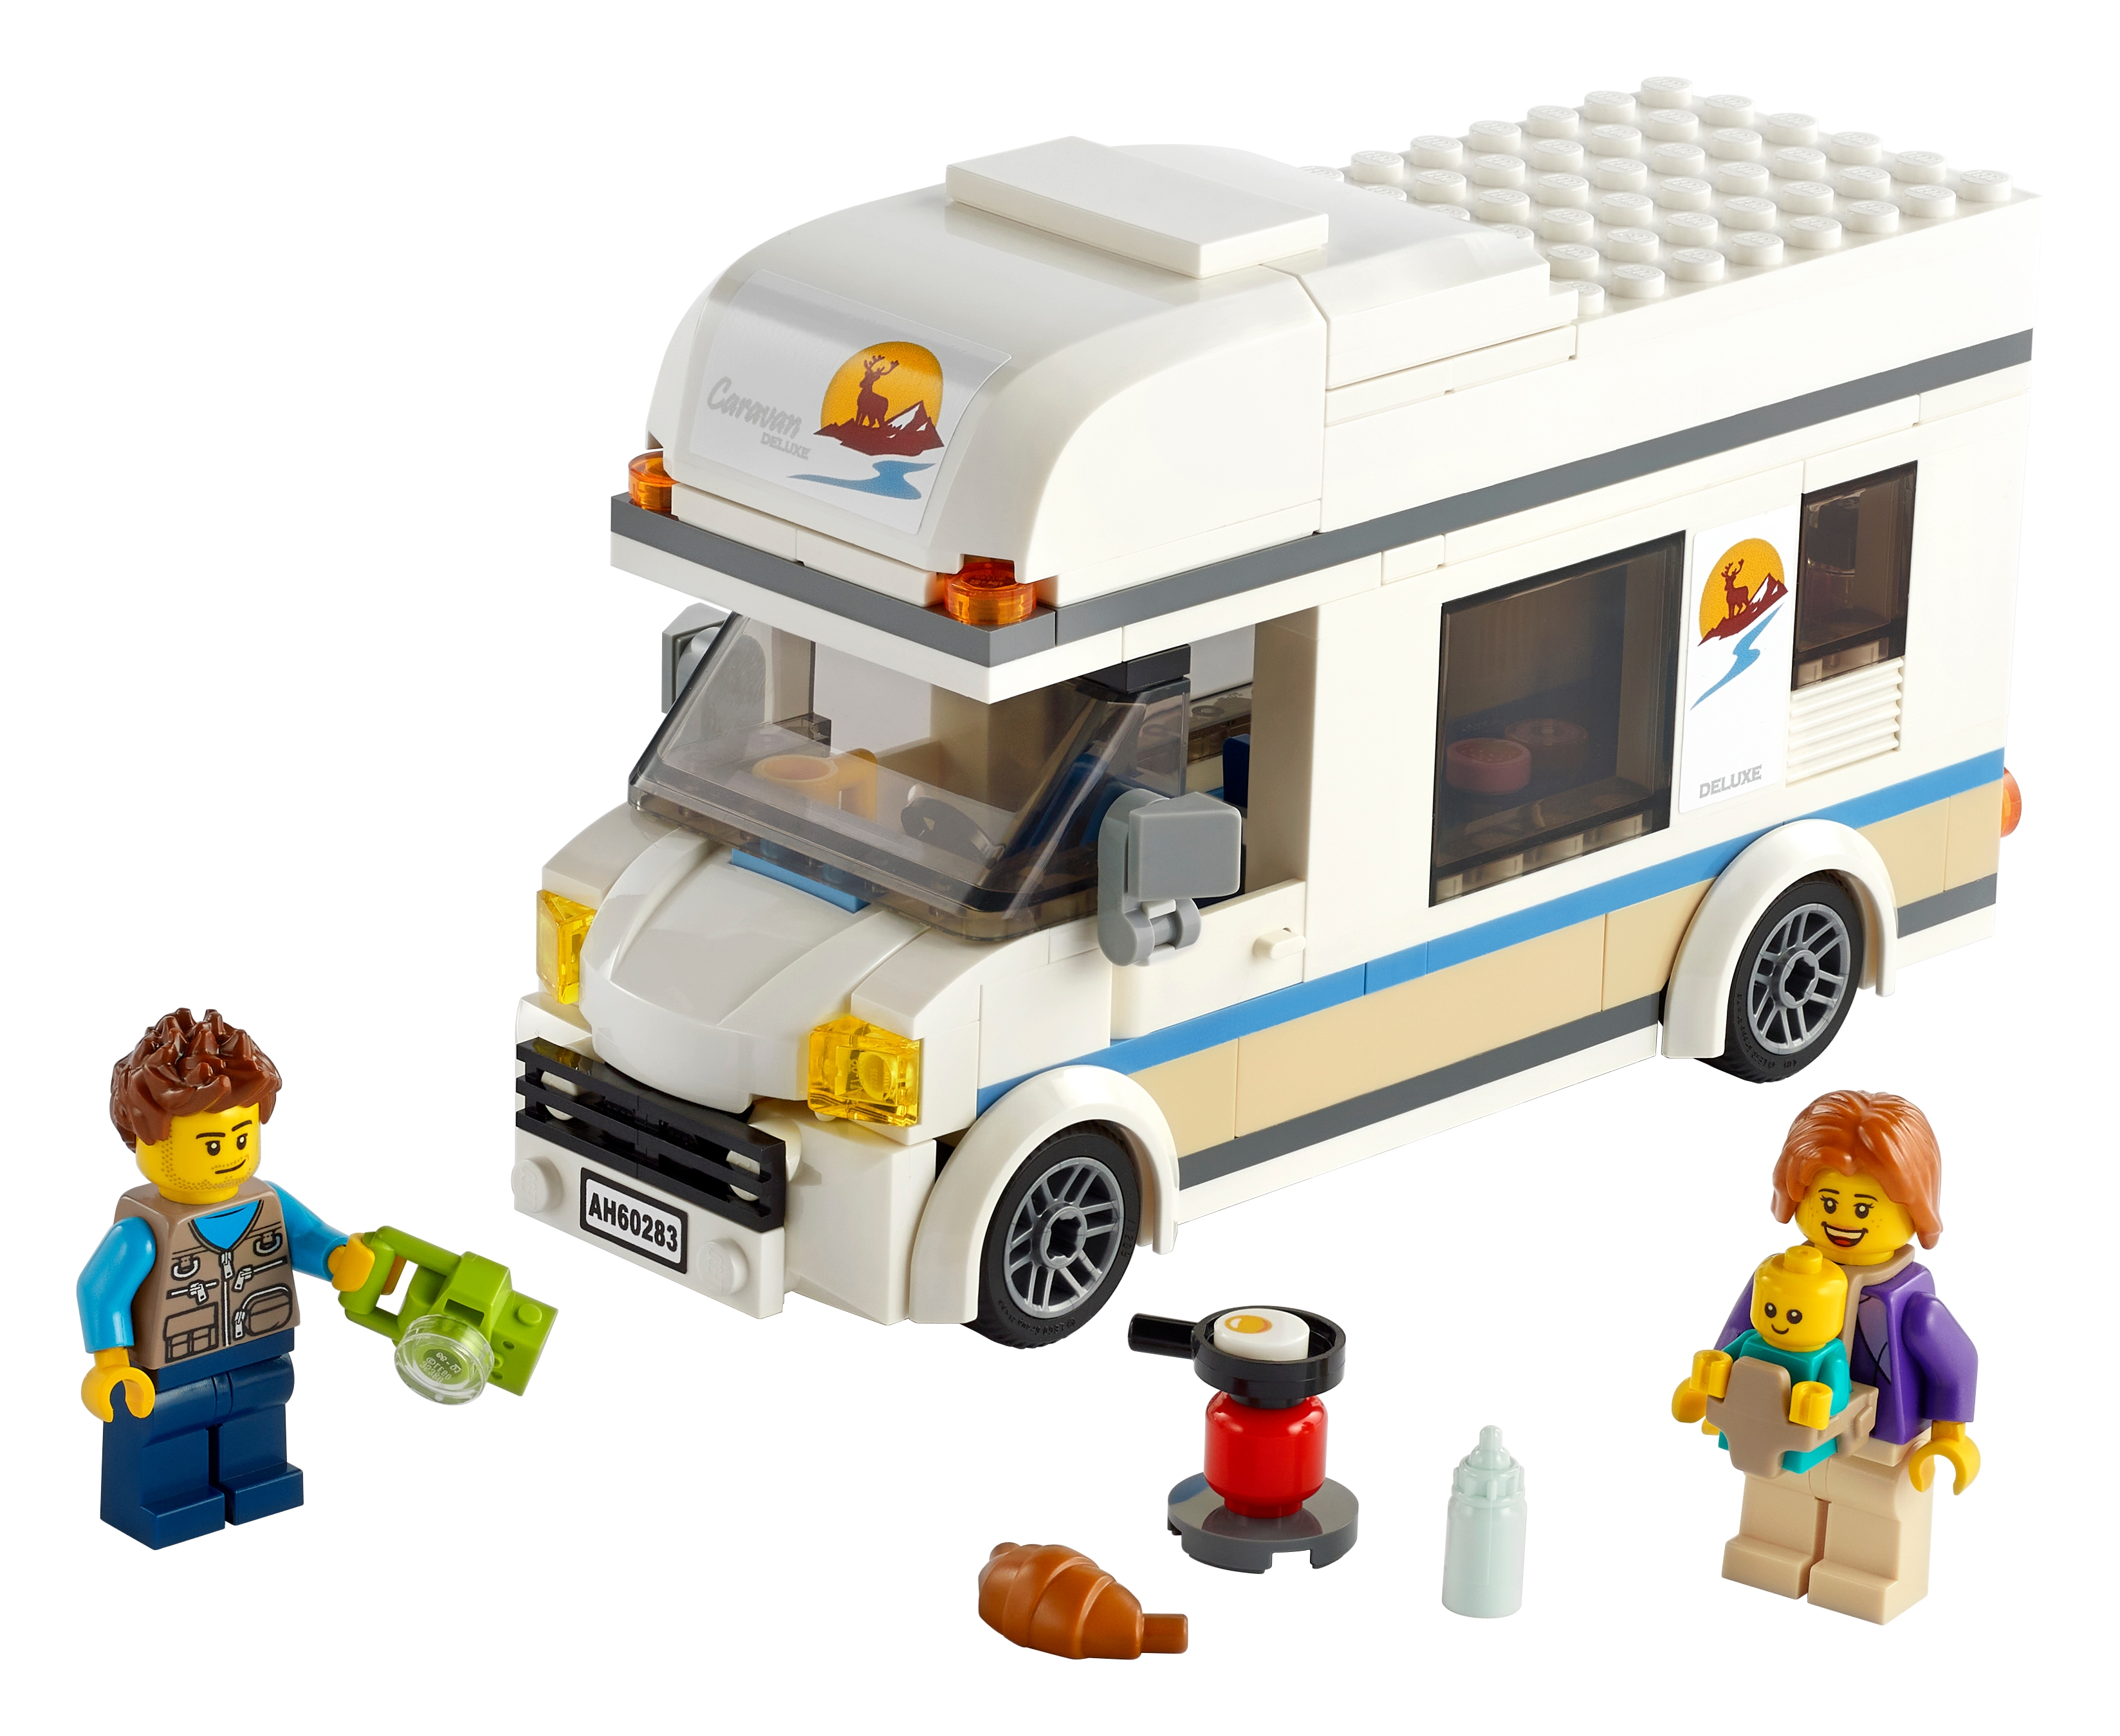 LEGO City 60283 - Wakacyjny kamper